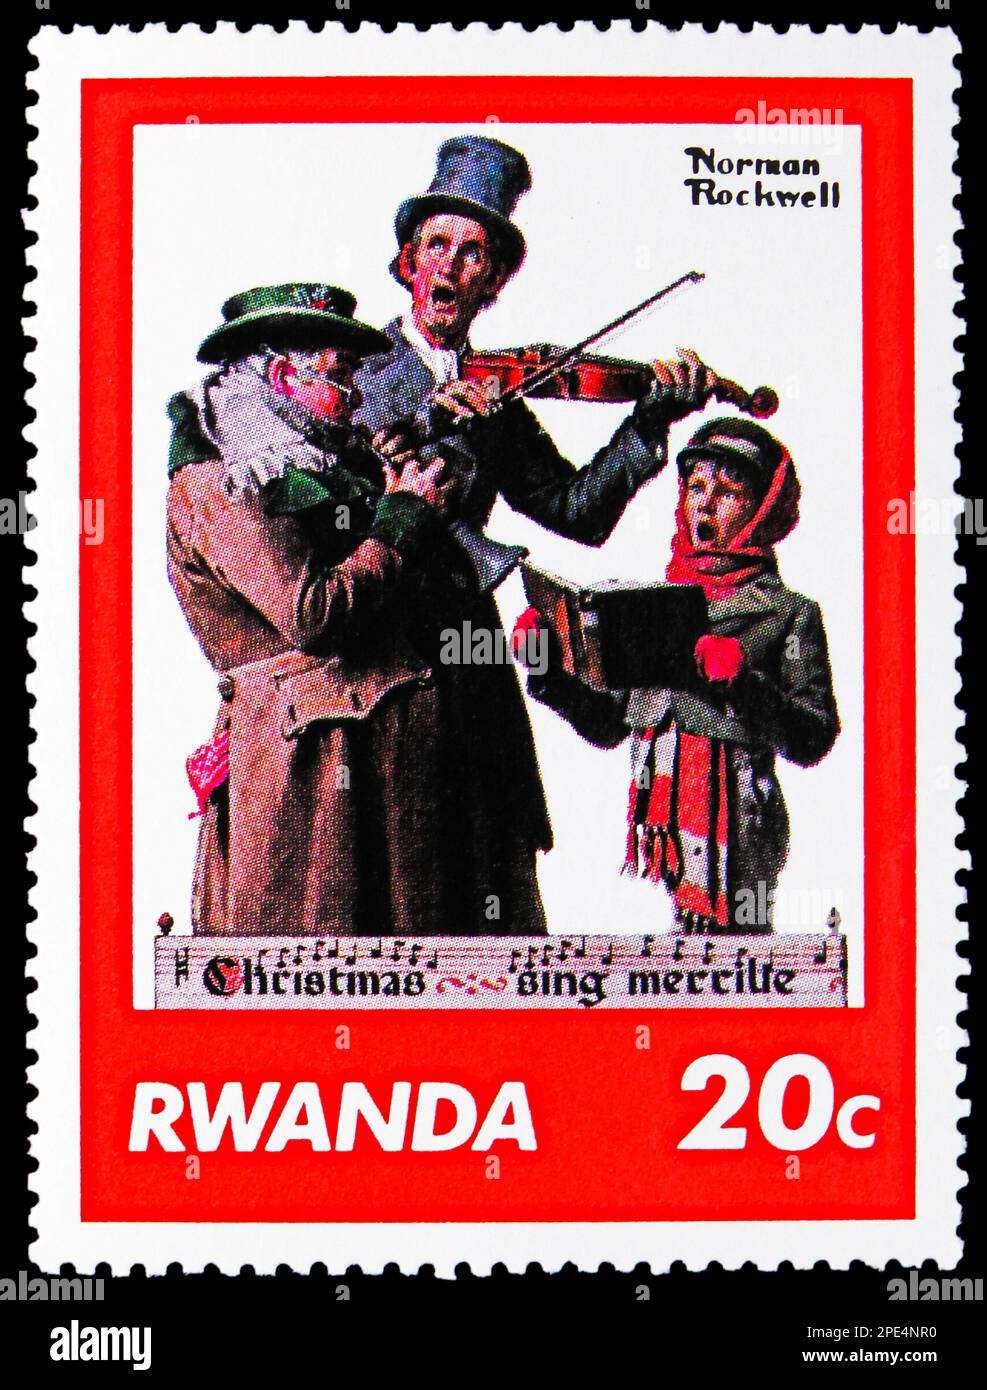 MOSCOU, RUSSIE - 17 FÉVRIER 2023 : timbre-poste imprimé au Rwanda montre des musiciens, des peintures de la série Norman Rockwell, vers 1981 Banque D'Images